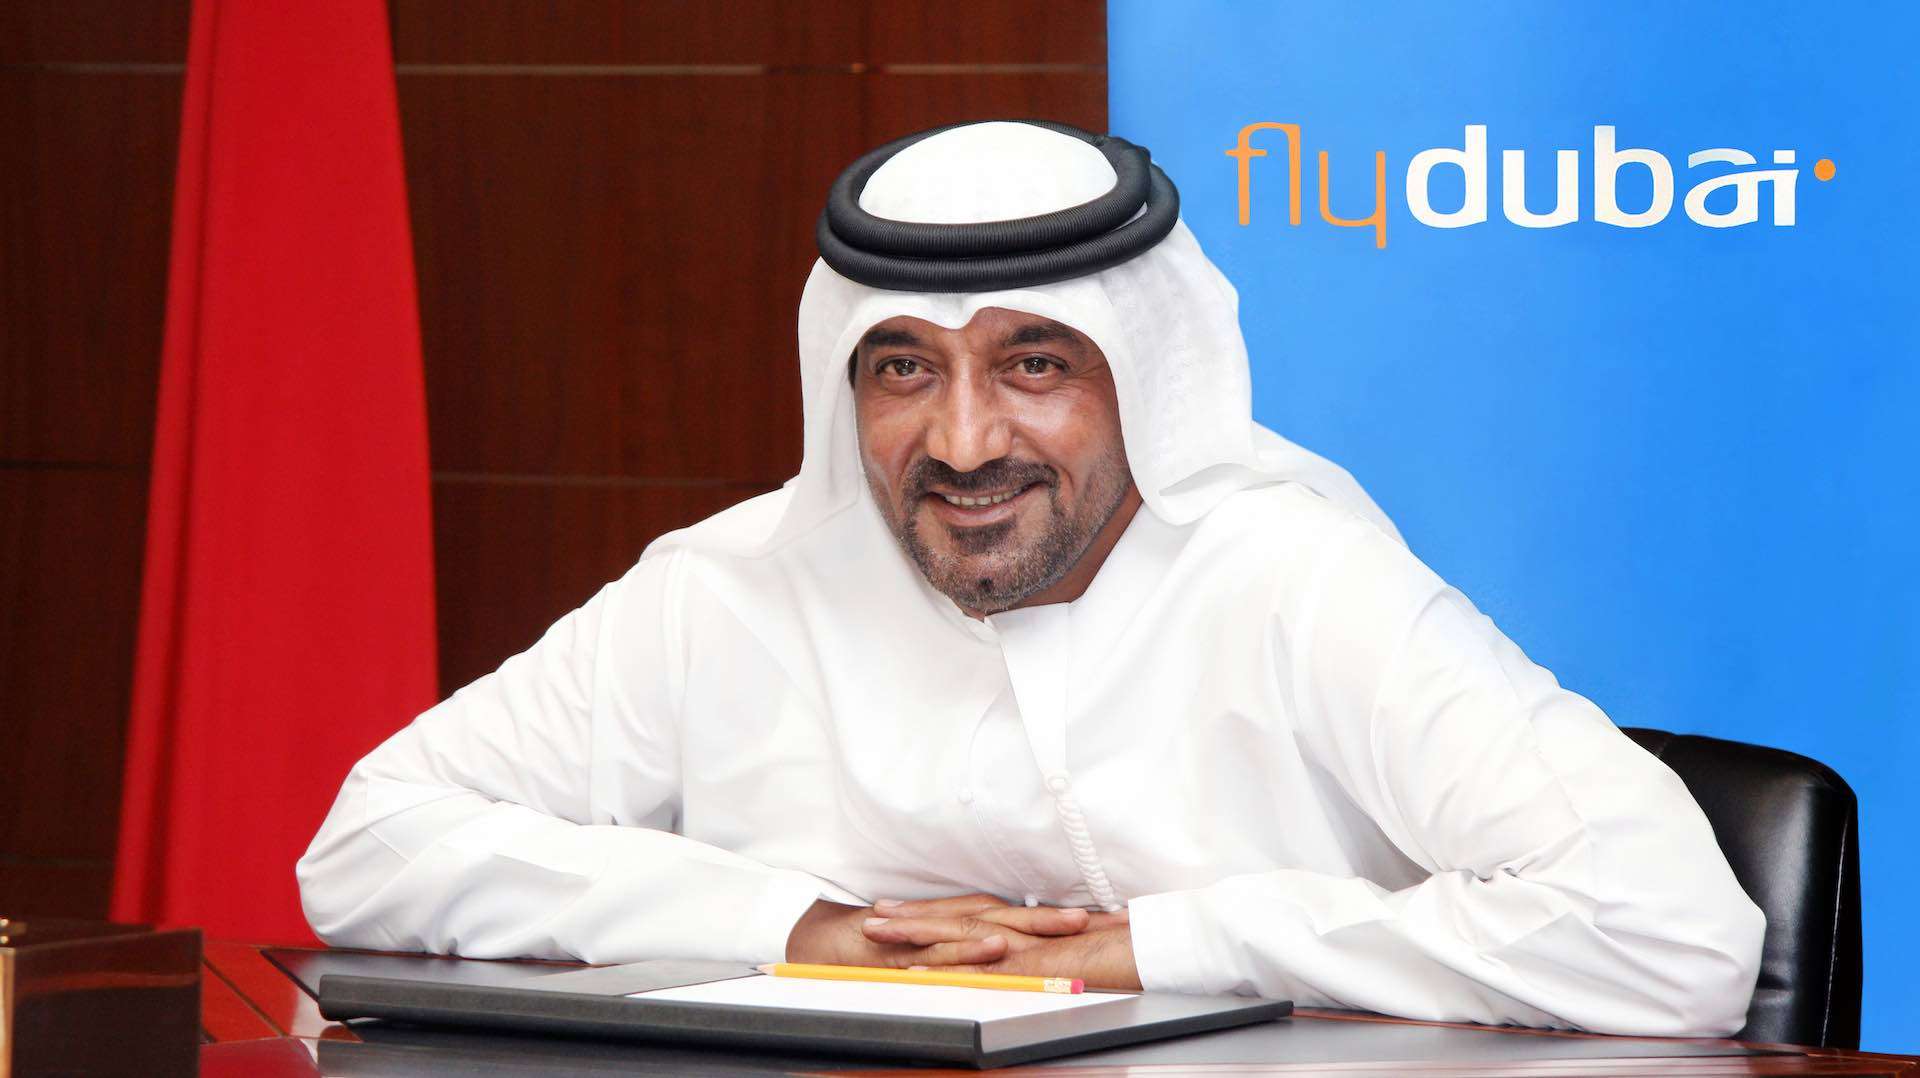 Dubai airline flydubai announces AED1.2 billion profit for 2022